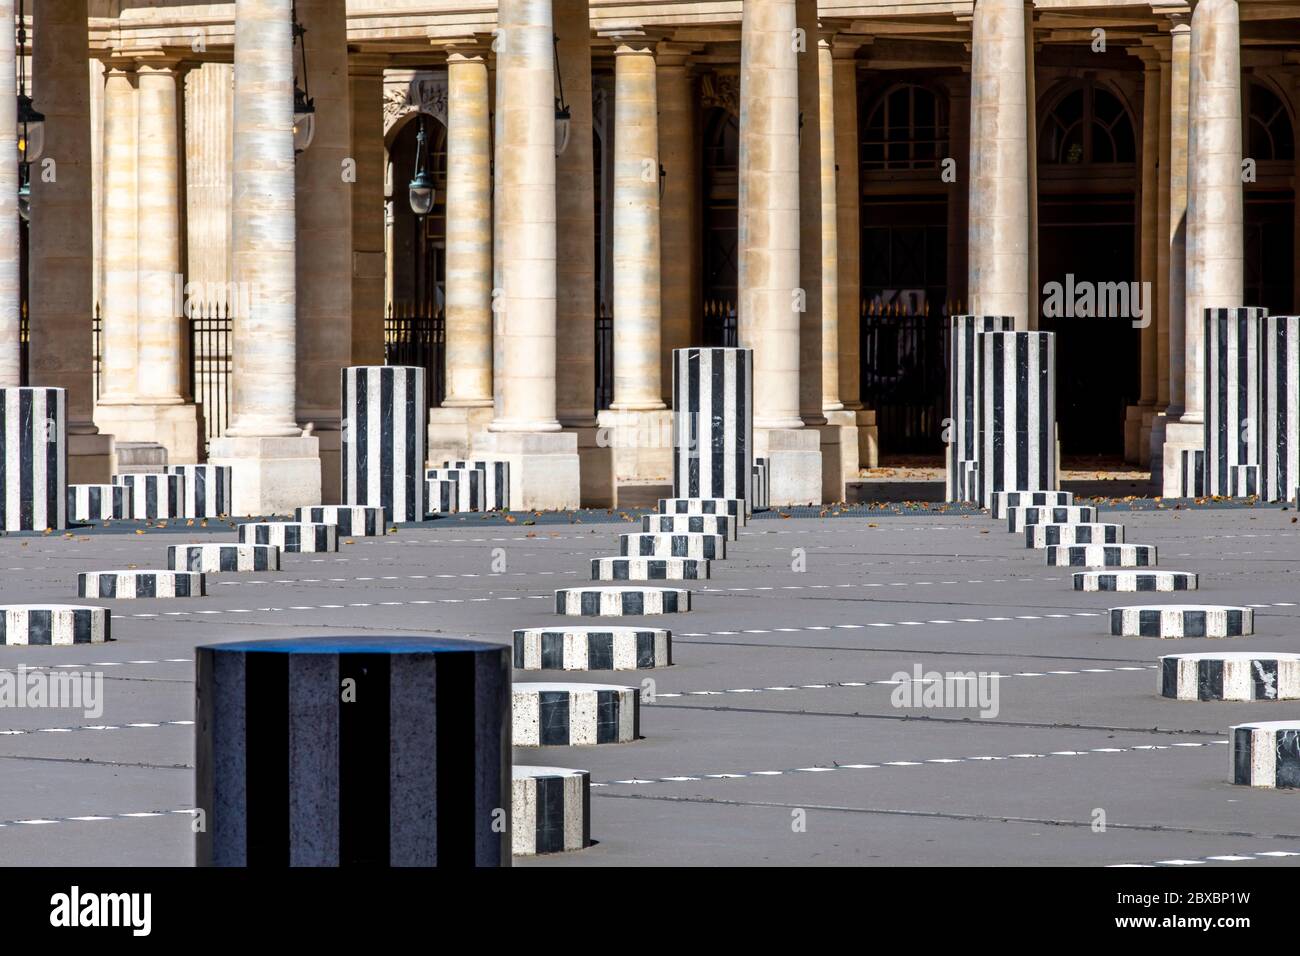 Paris, France - 29 mai 2020 : Cour d'Honneur au Palais Royal (Palais-Cardinal, 1639) à Paris : célèbres colonnes noires et blanches Buren (1985) Banque D'Images